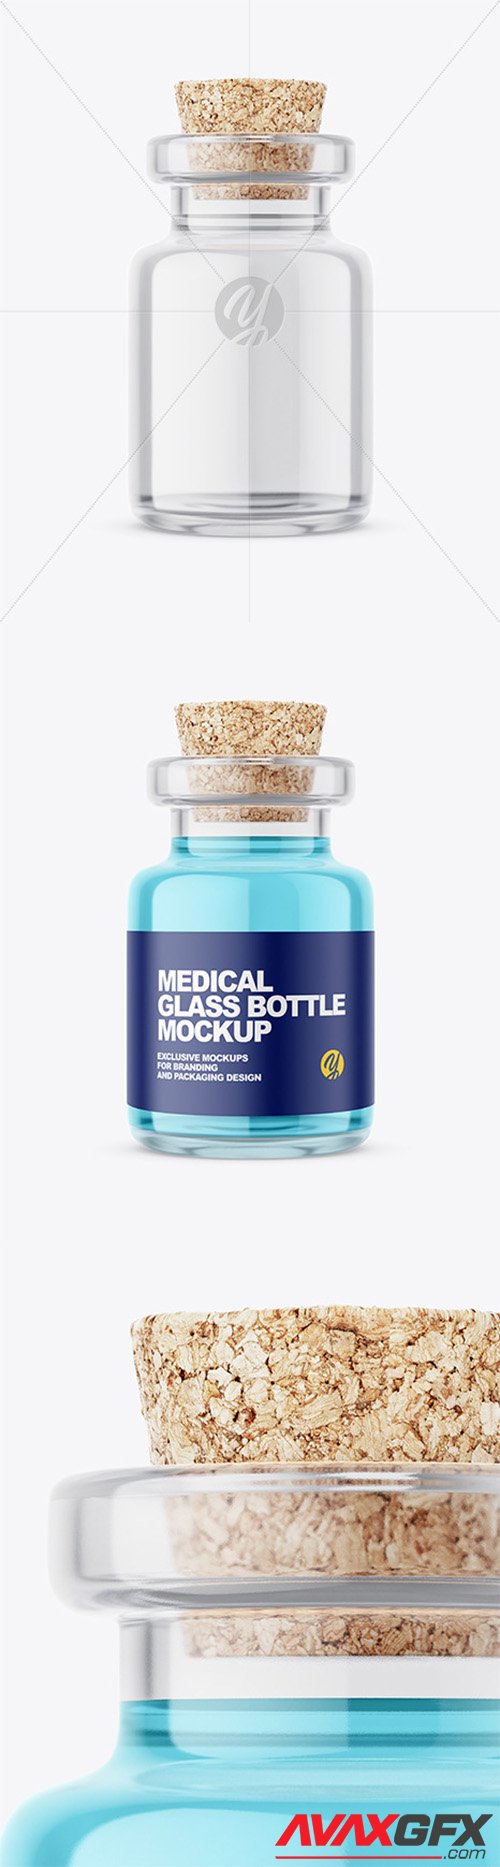 Glass Medical Bottle with Cork Mockup 58074